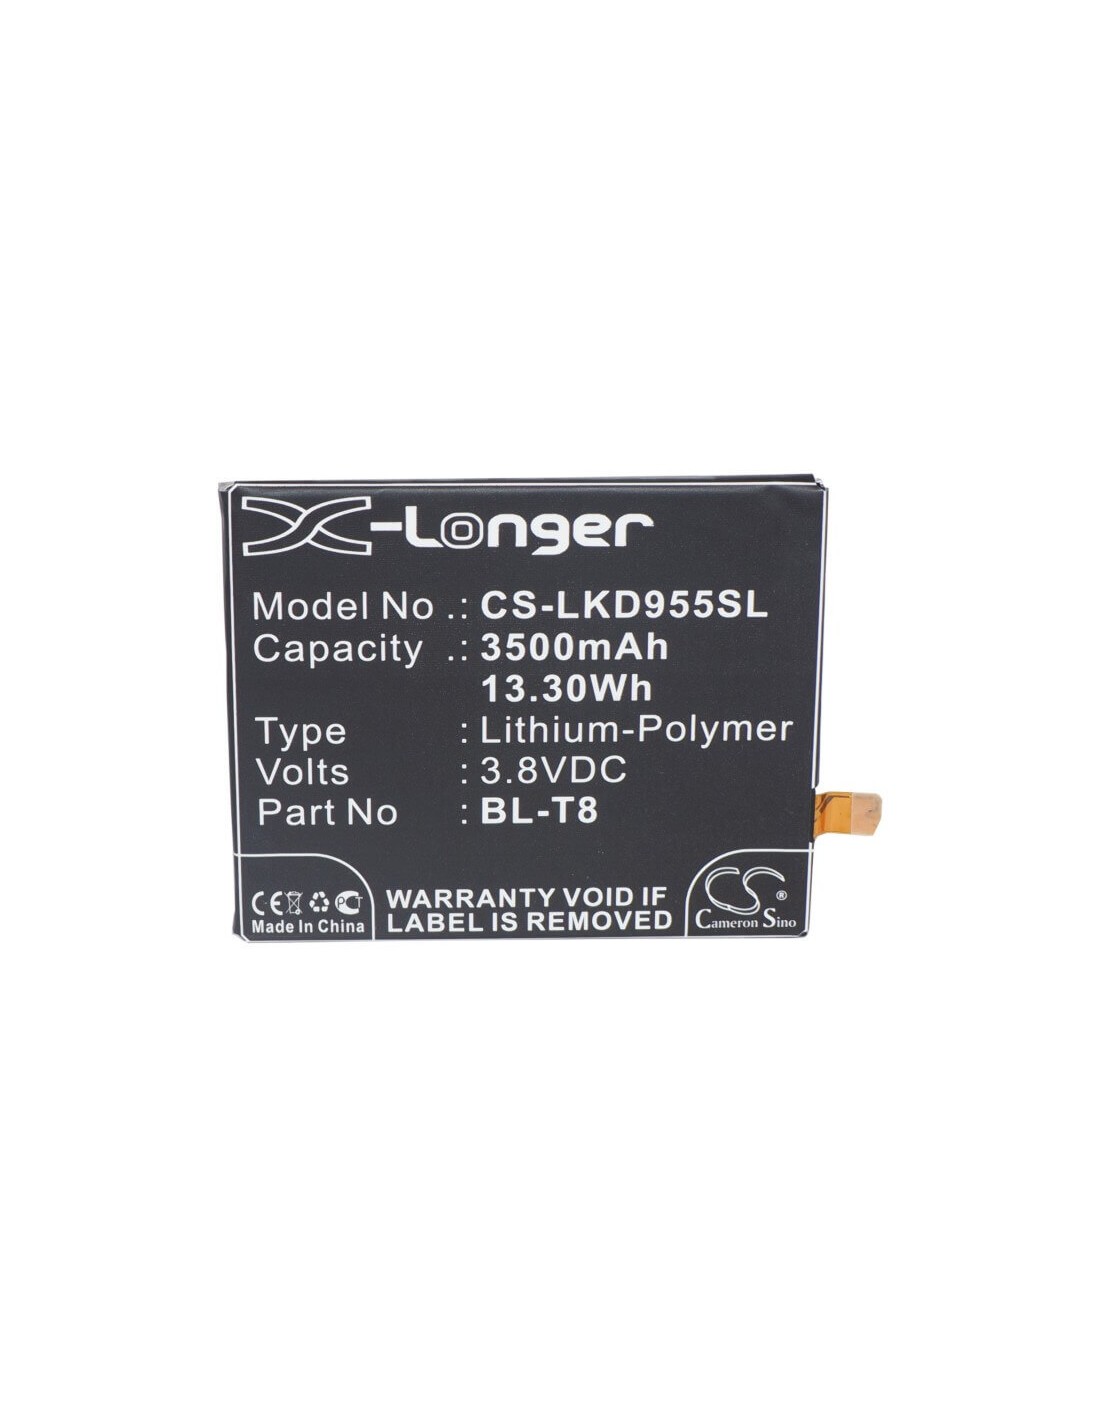 Battery for LG LS995, Chameleon, D950 3.8V, 3500mAh - 13.30Wh